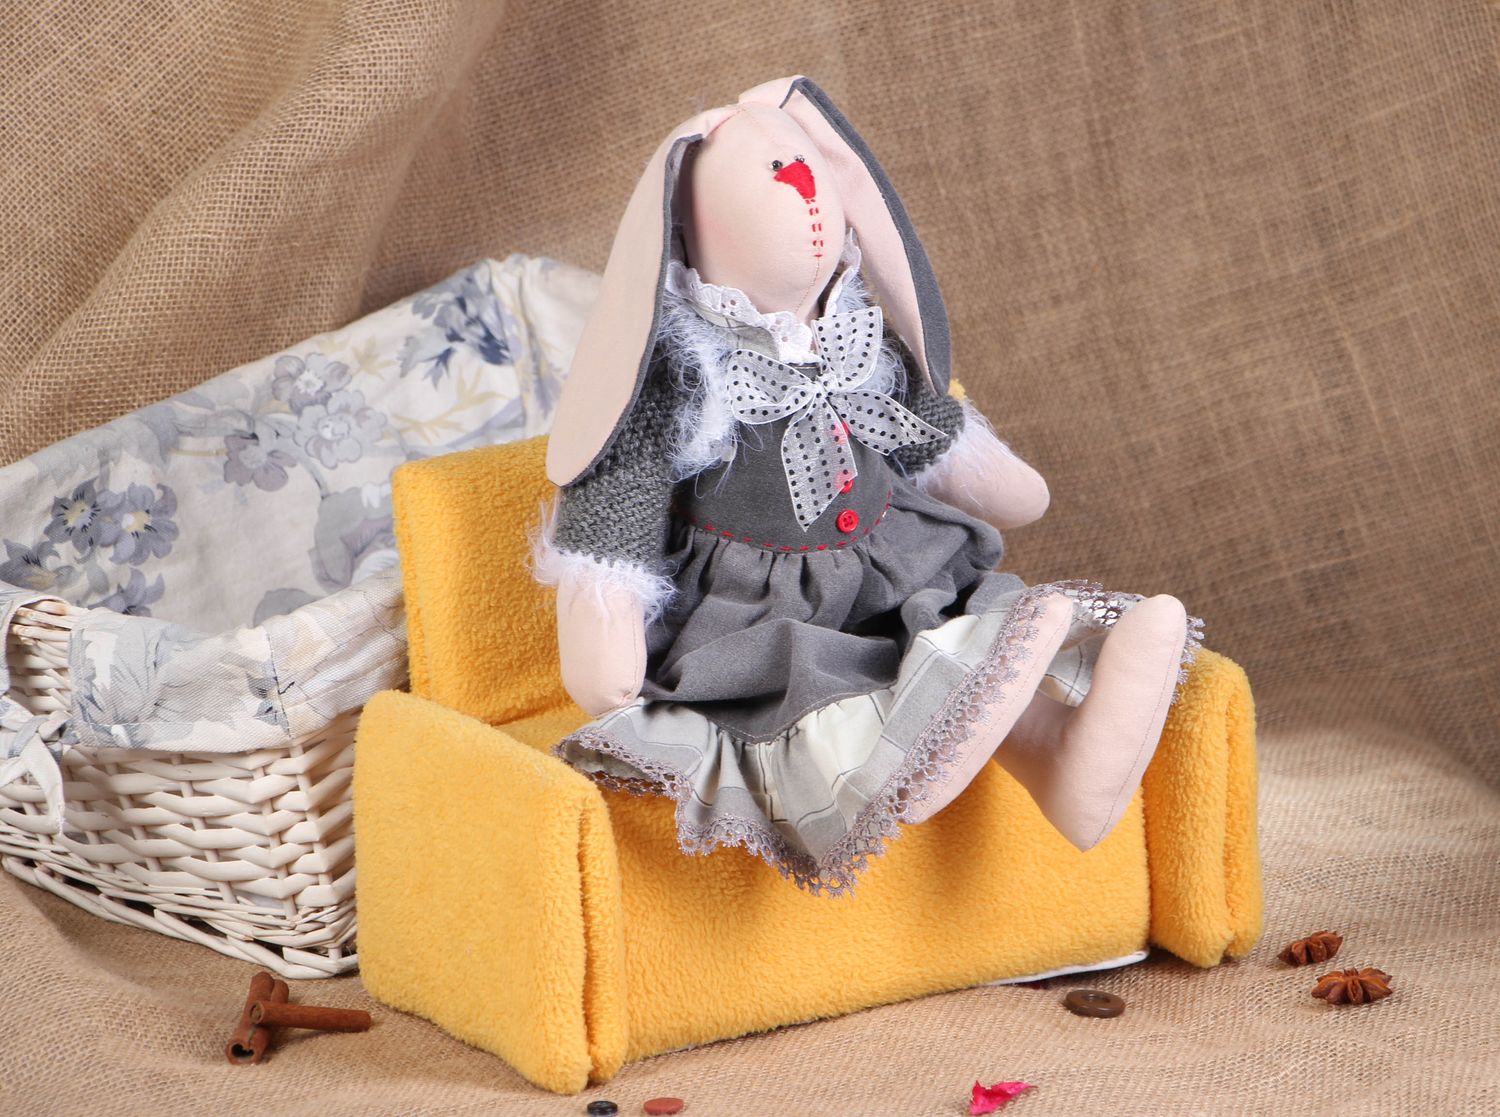 Textil Spielzeug Hase auf Sofa foto 5